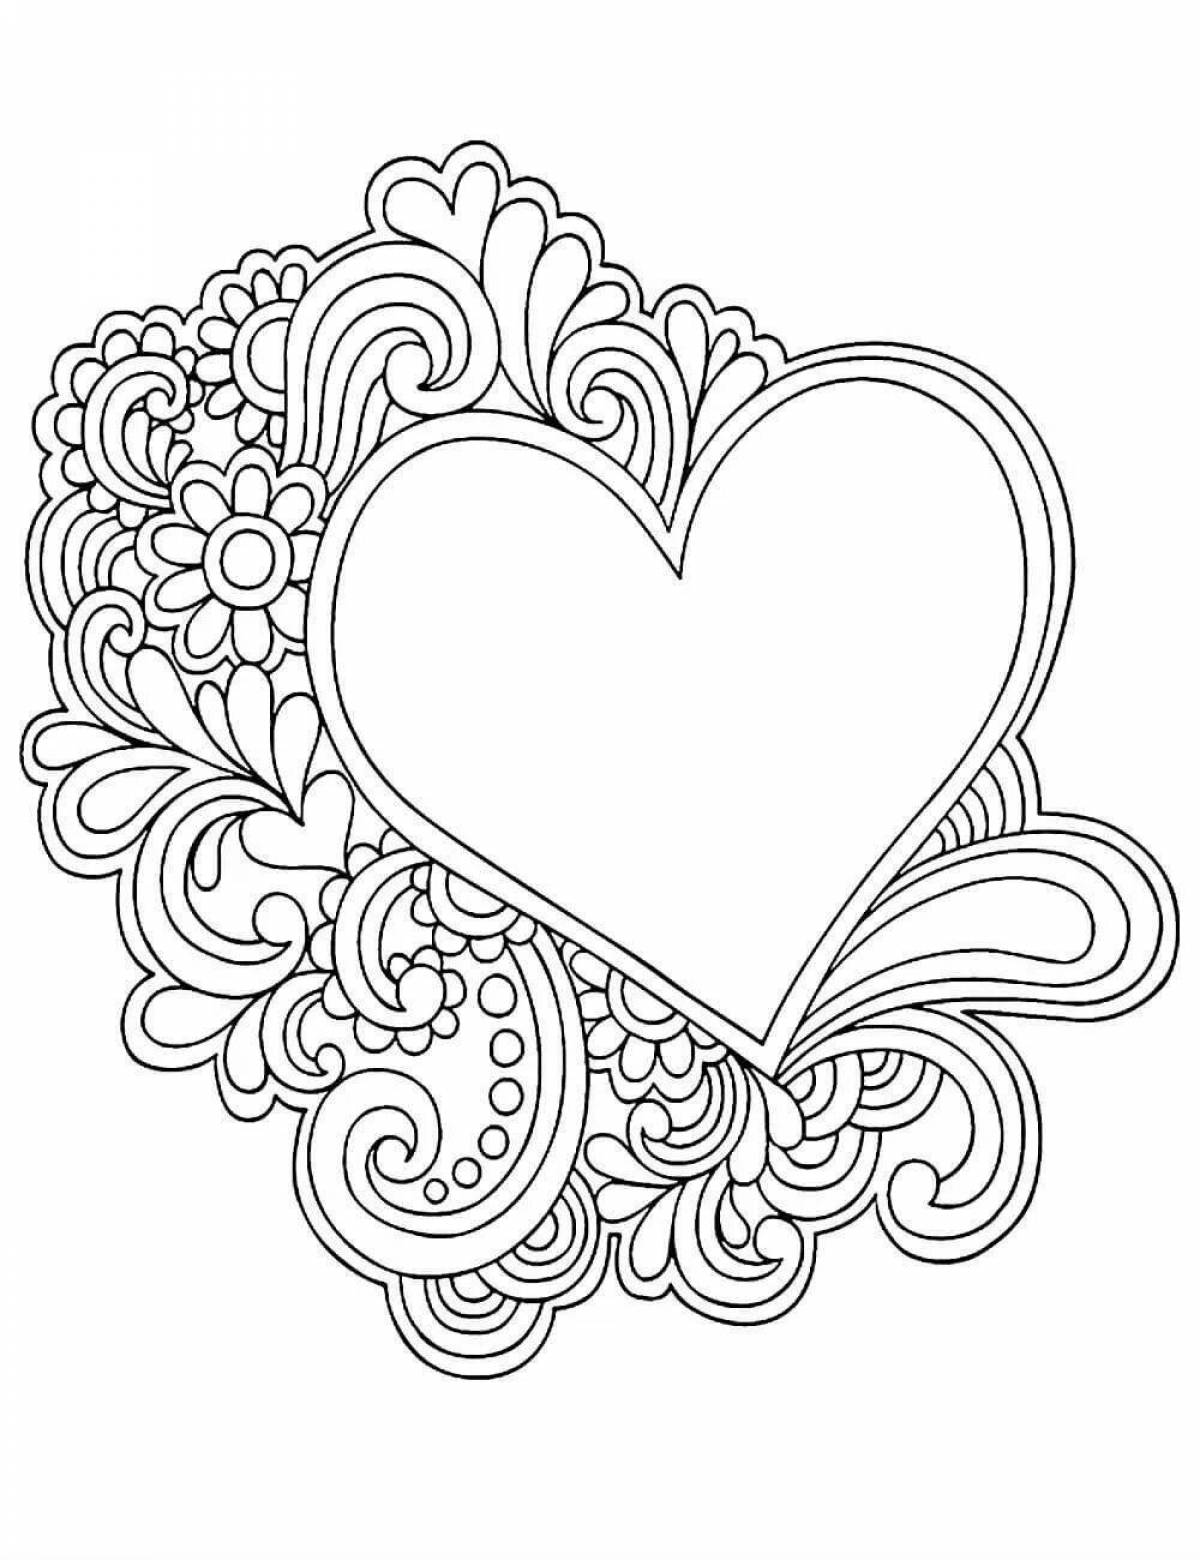 Fun card heart coloring